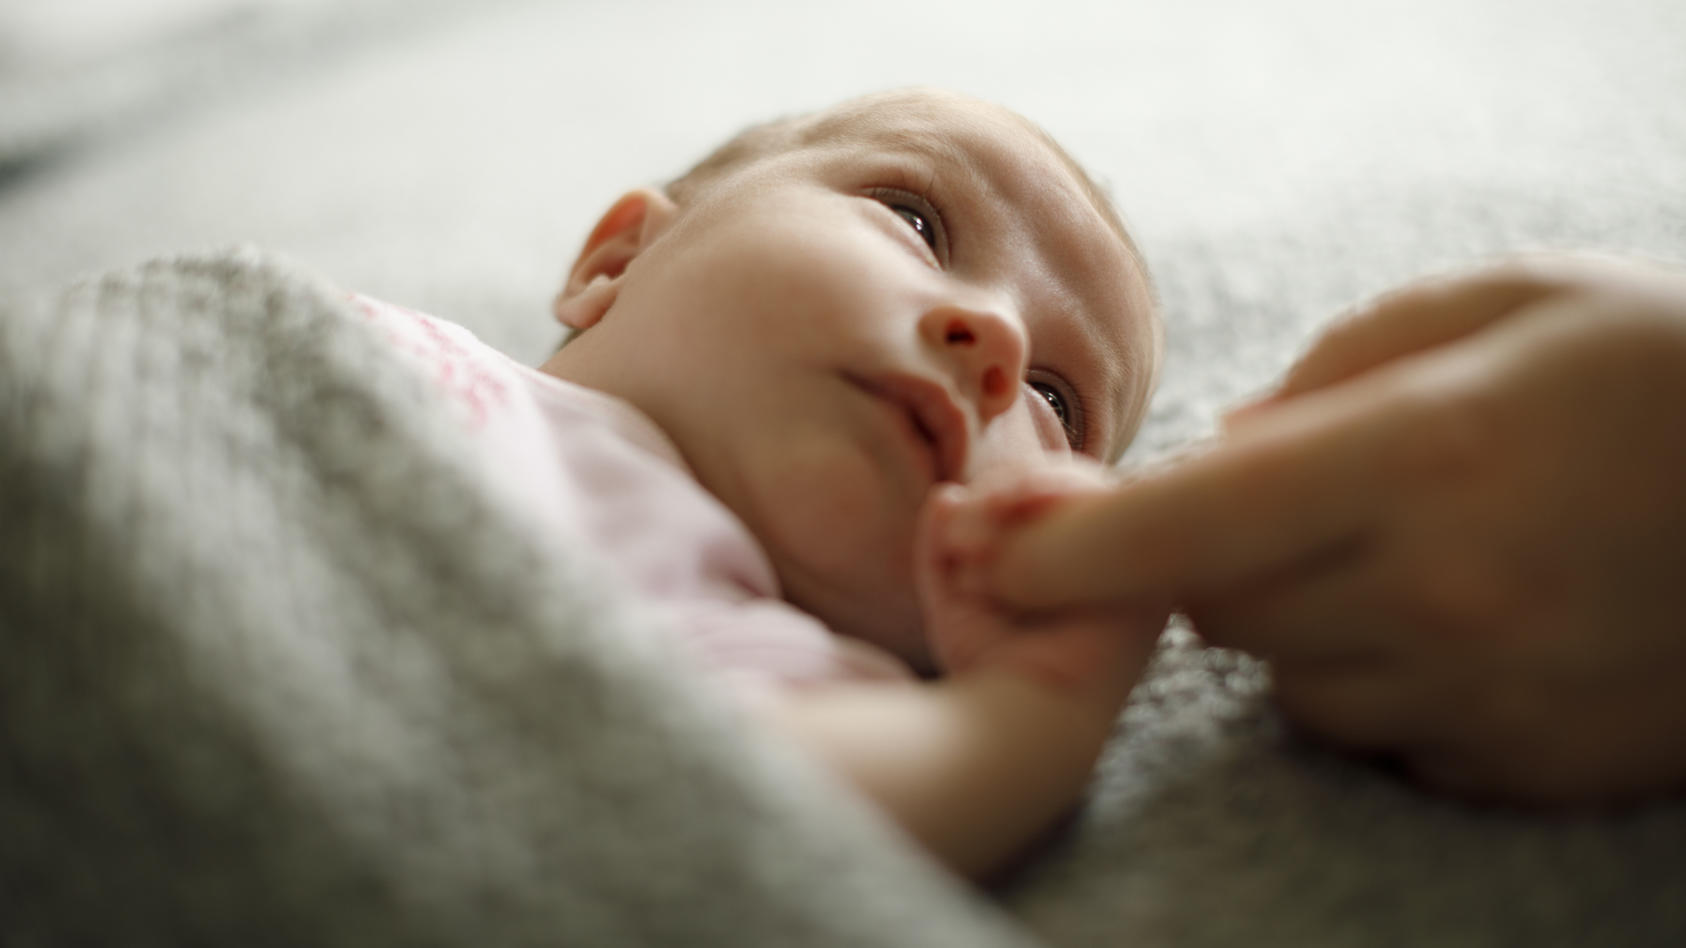 In gewissen Entwicklungsbereichen kann die Pandemie einen Nachteil für Babys bedeuten, haben US-Forscher festgestellt.